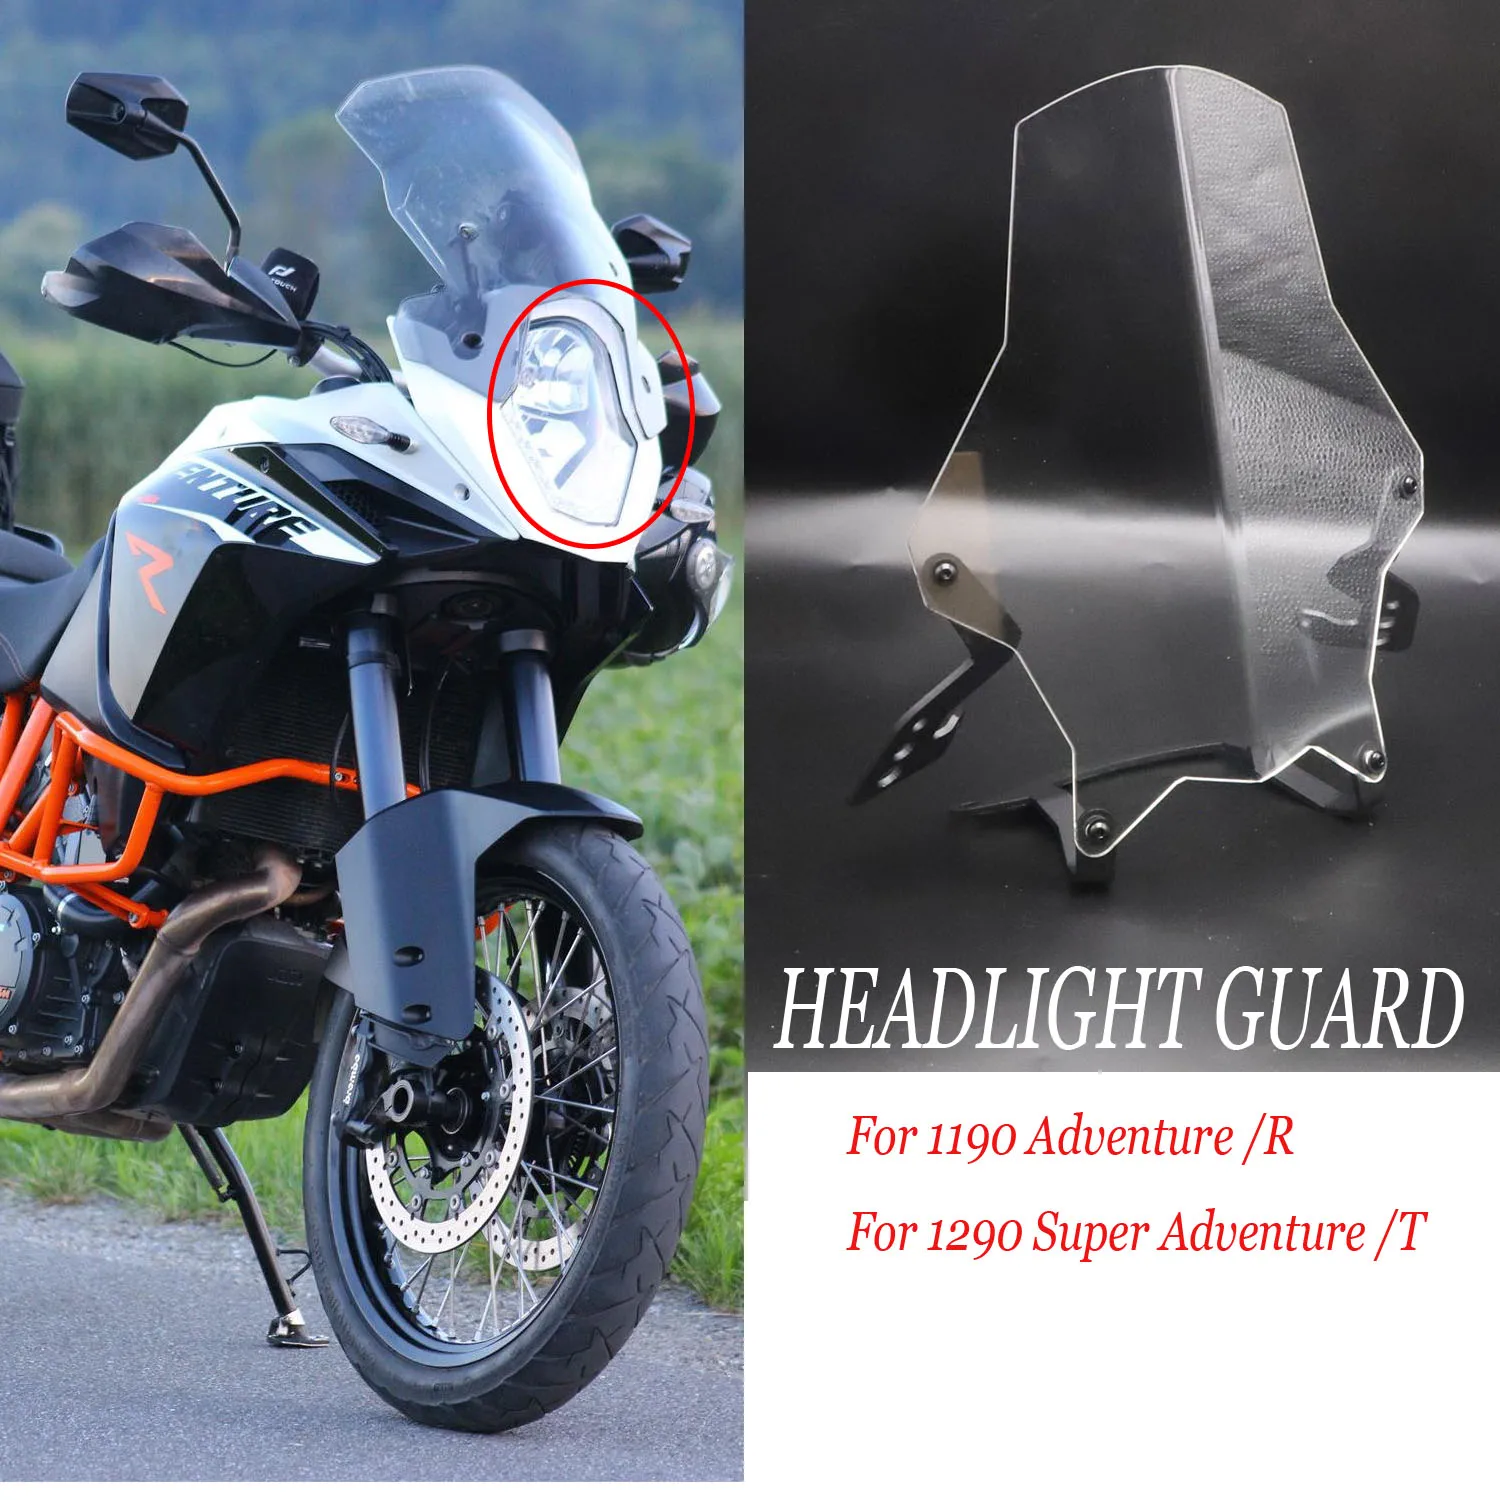 

Аксессуары для мотоциклов 1190 Adventure /R защита фар защитный чехол 2013 2014 2015 2016